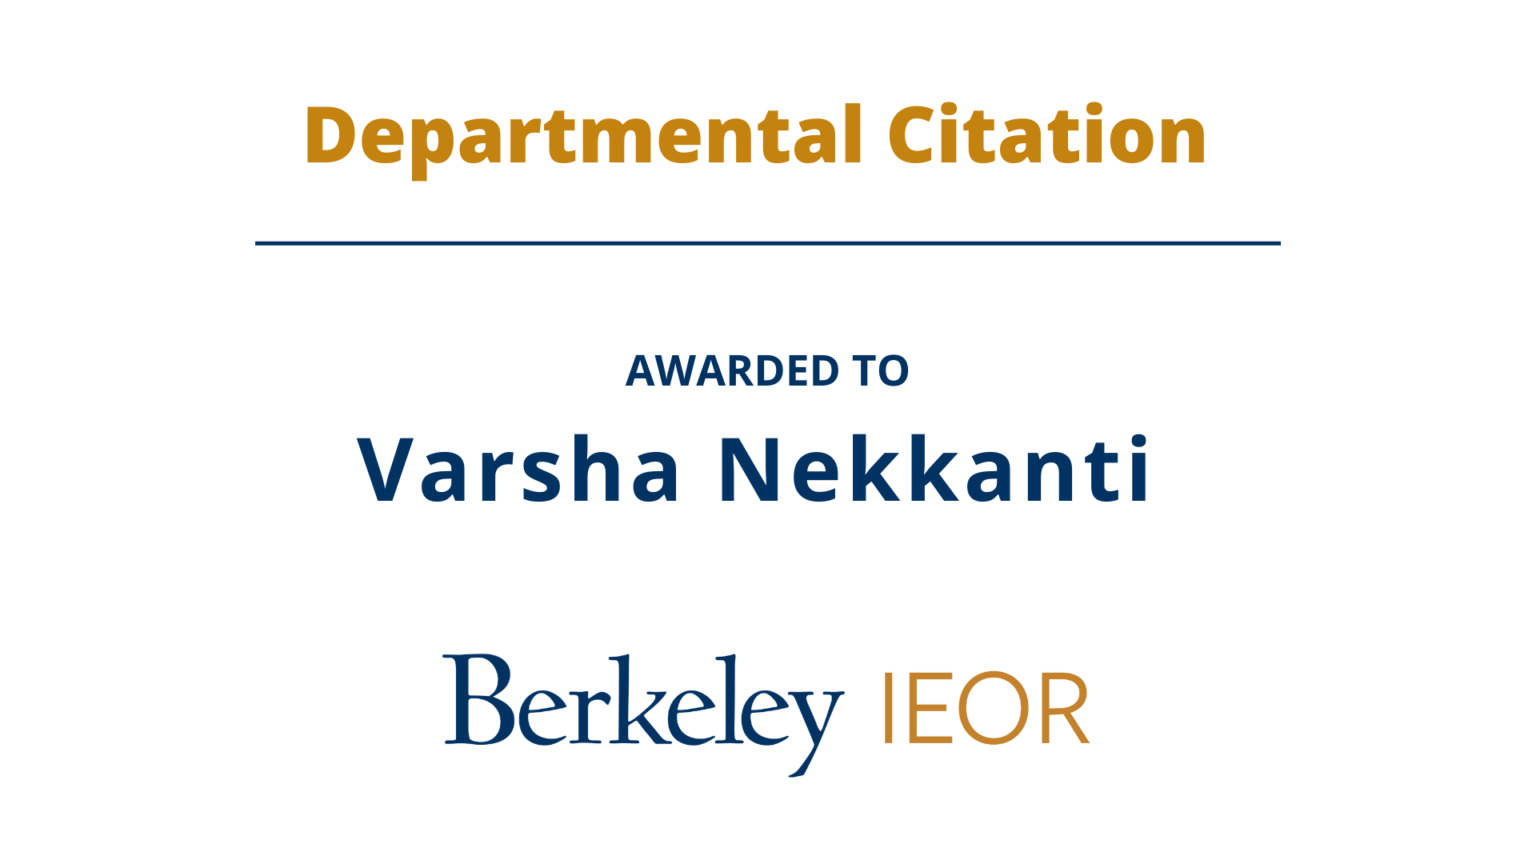 Departmental Citation, varsha Nekkanti